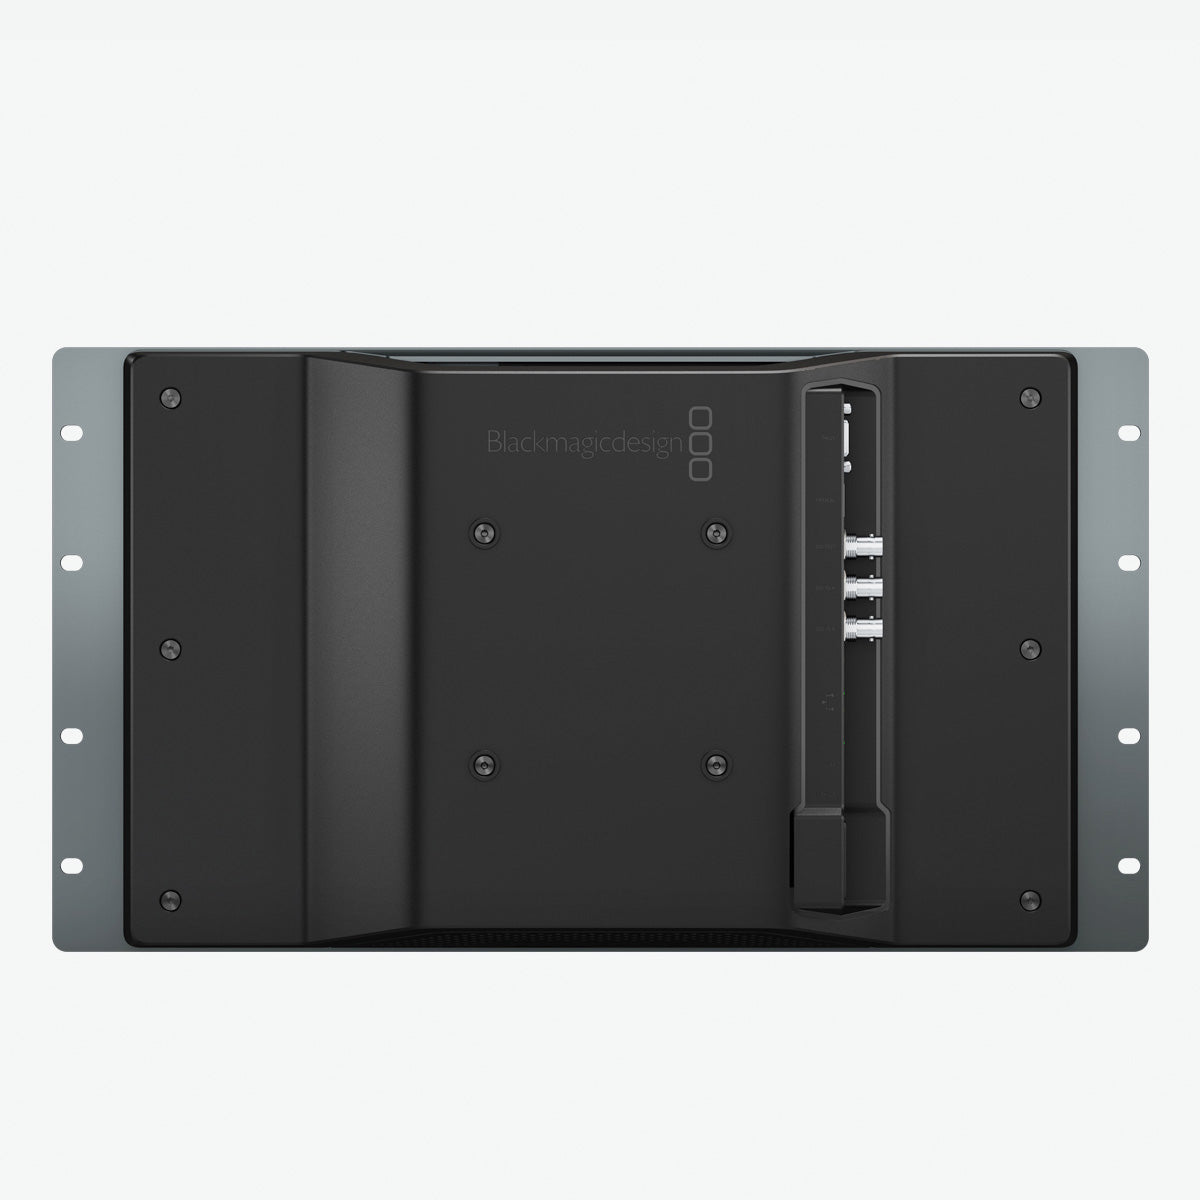 Blackmagic Design(ブラックマジックデザイン) SmartView 4K 2 HDL-SMTV4K12G2